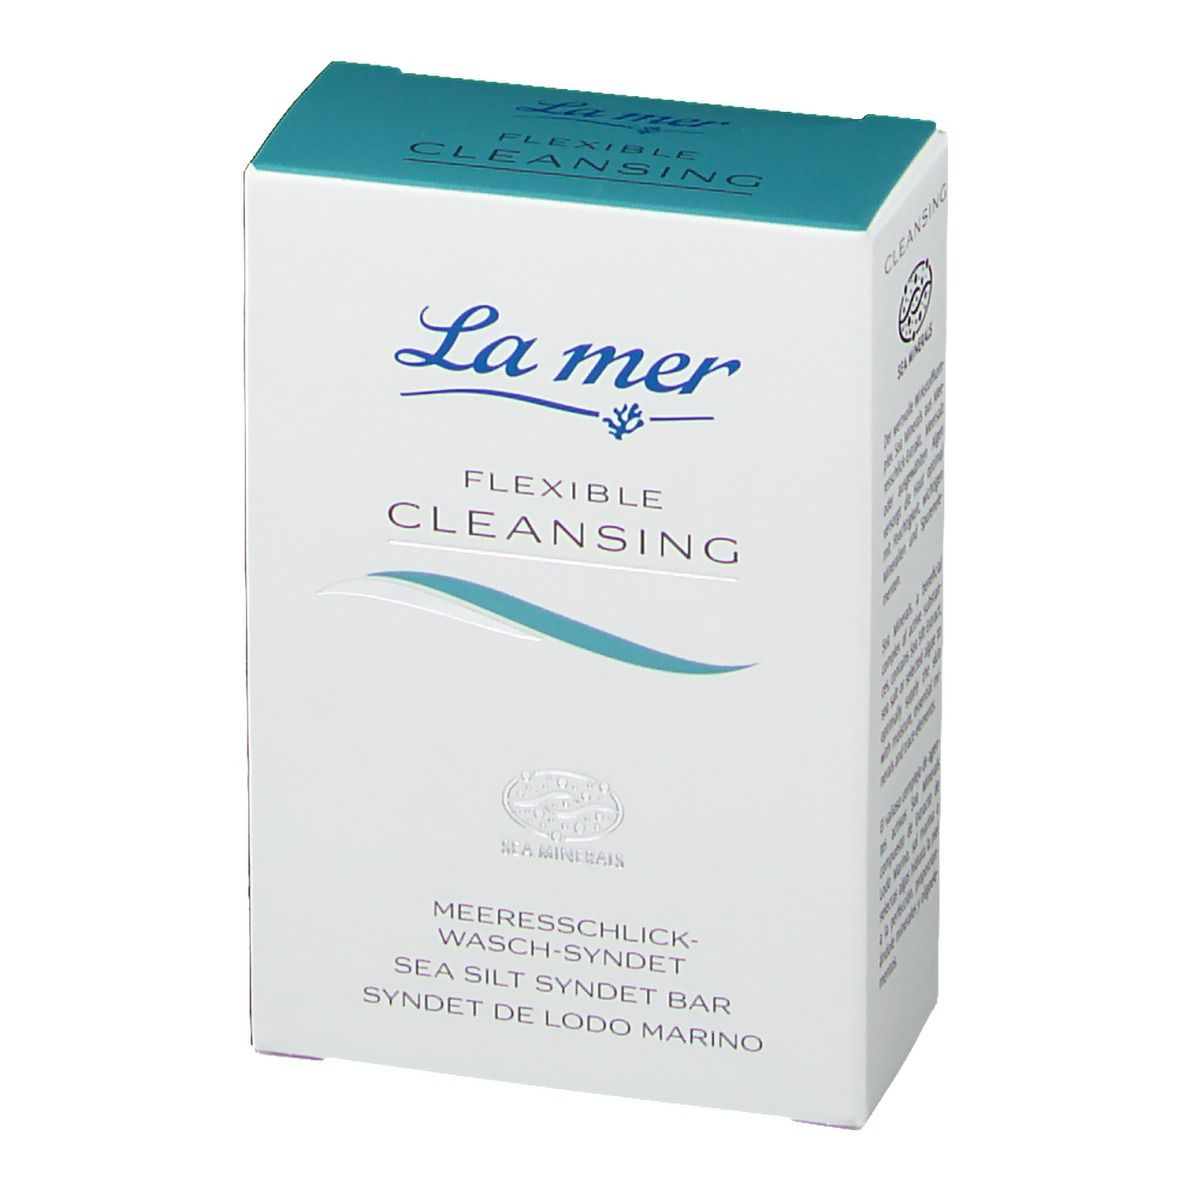 La mer Flexible Cleansing Meeresschlick-Wasch-Syndet mit Parfum